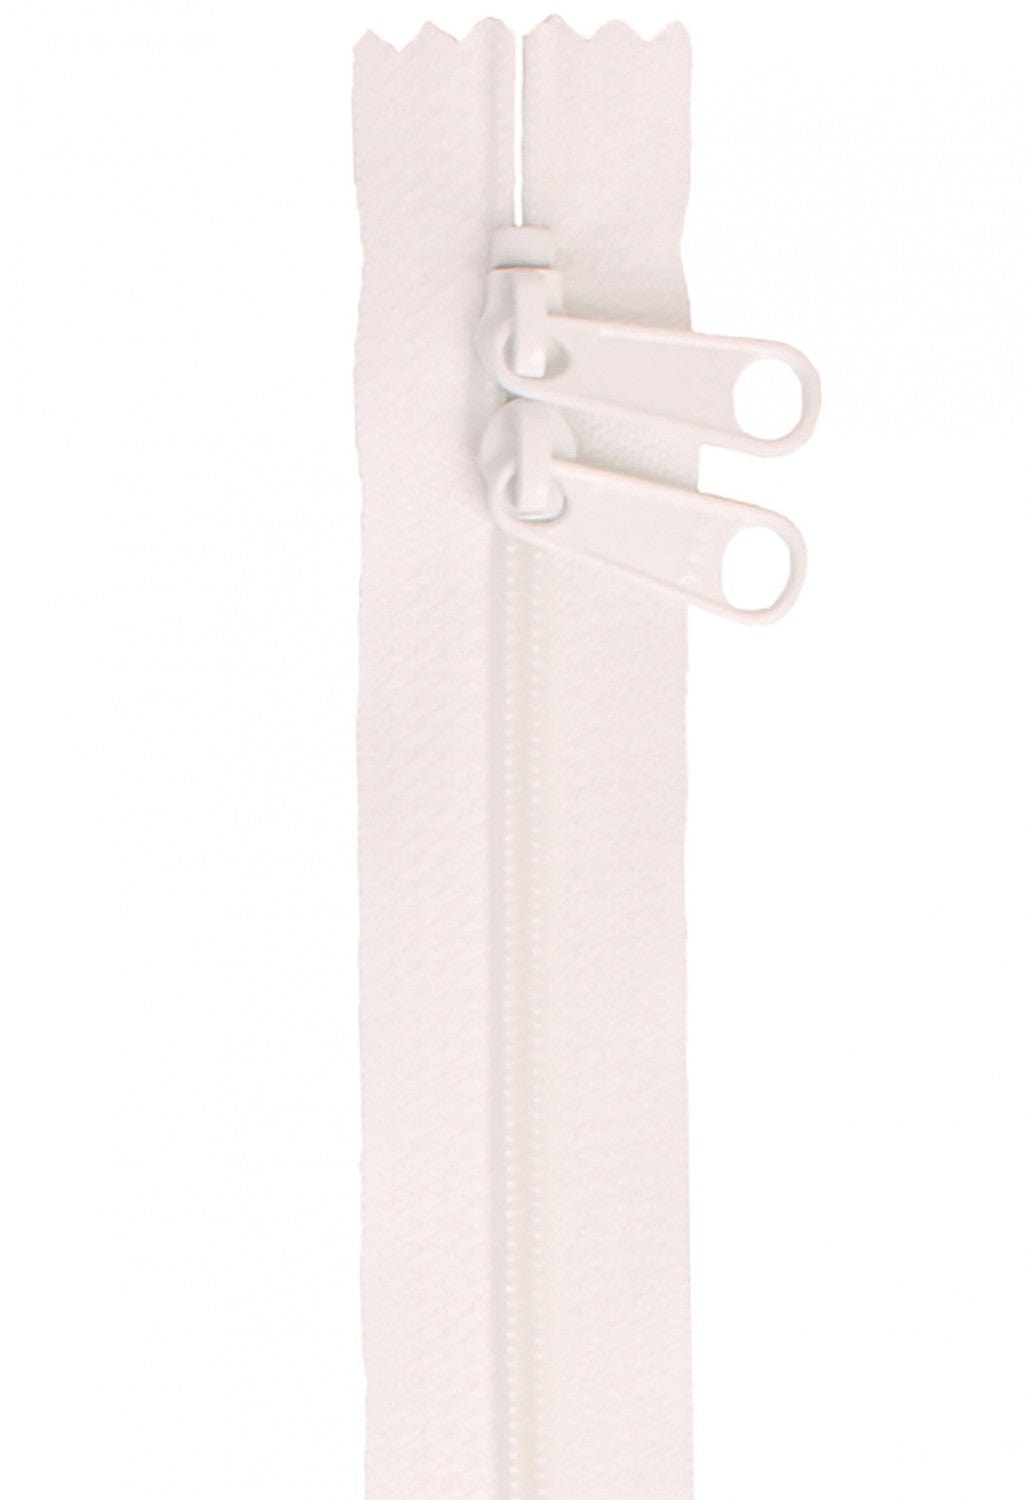 30" Long Double Slide Handbag Zipper in White